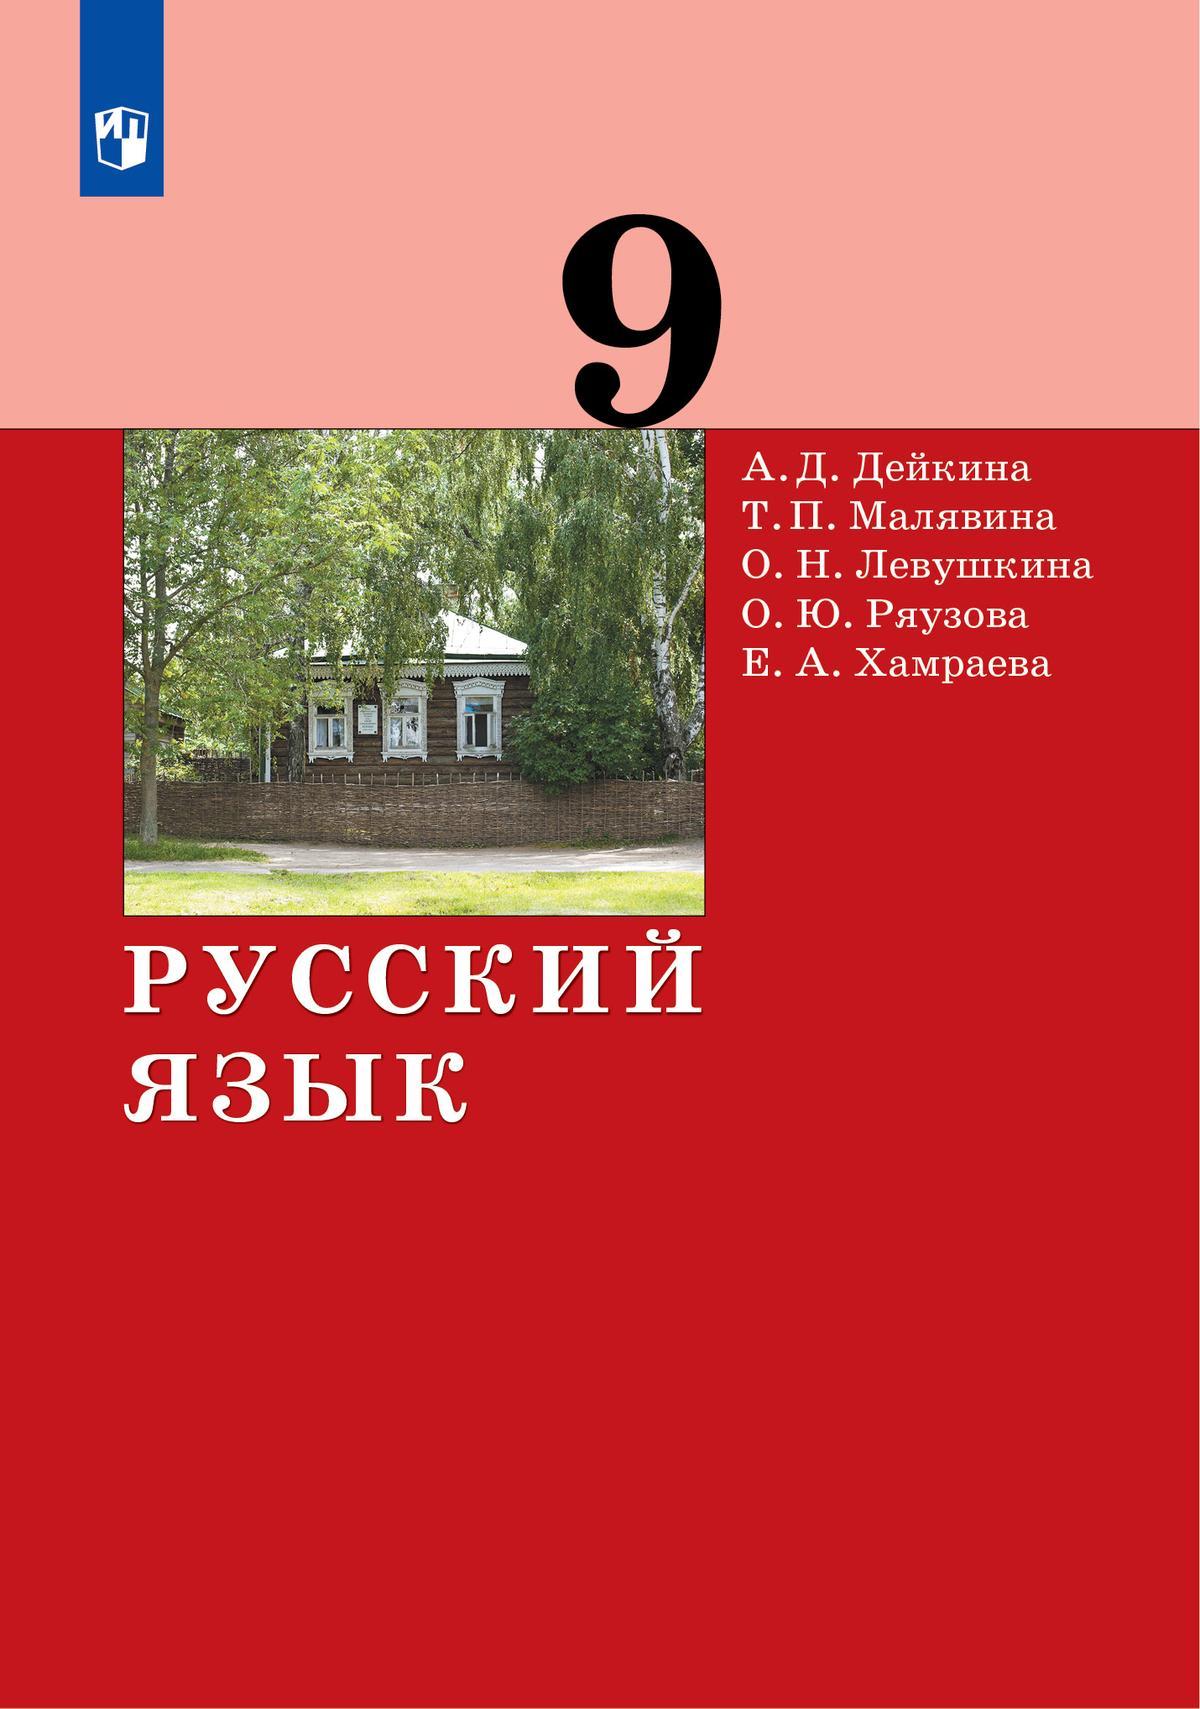 Русский язык. 9 класс. Электронная форма учебника 1